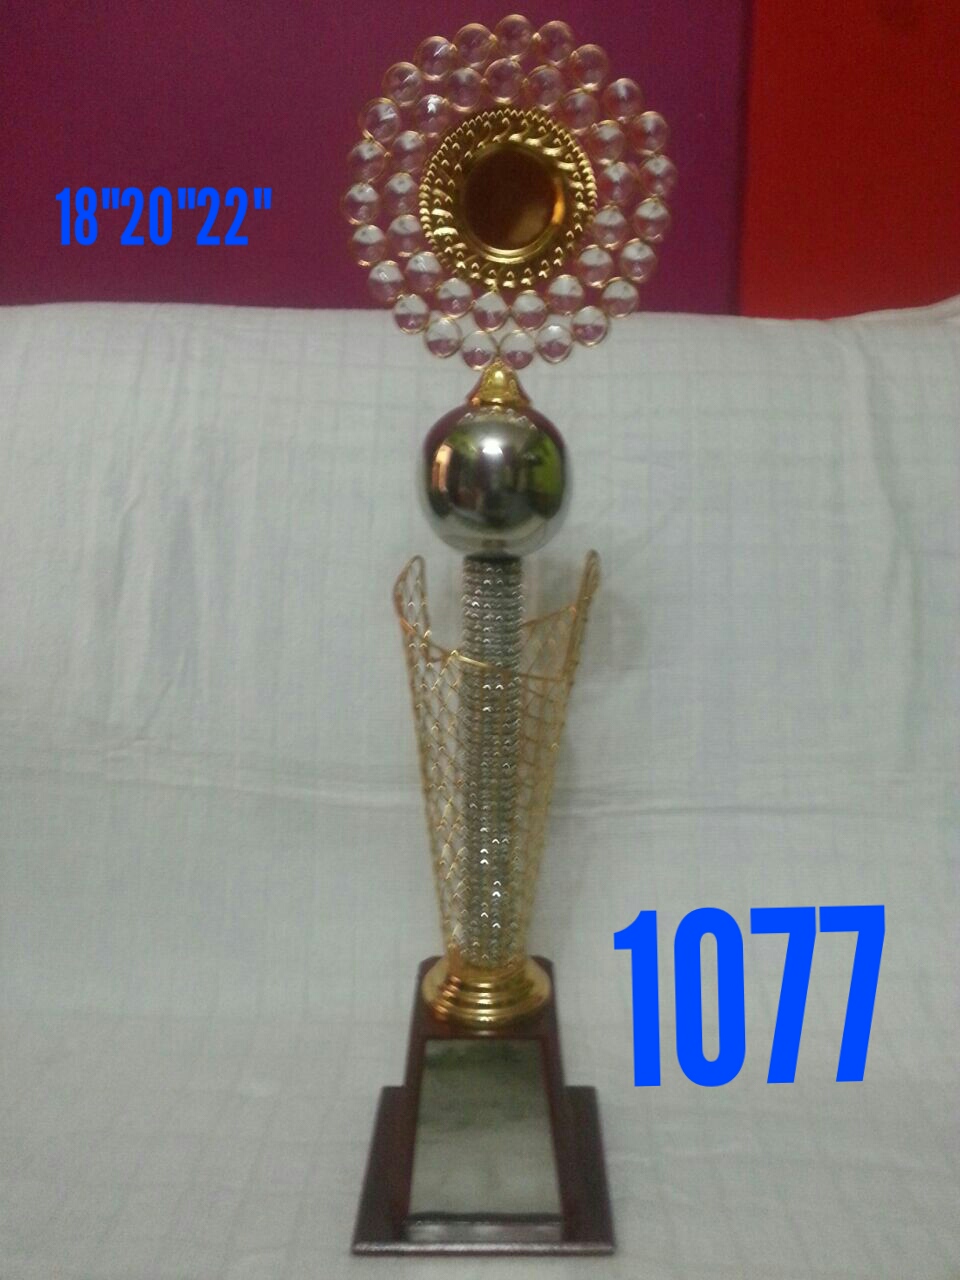 Trophy GATRY-V1077